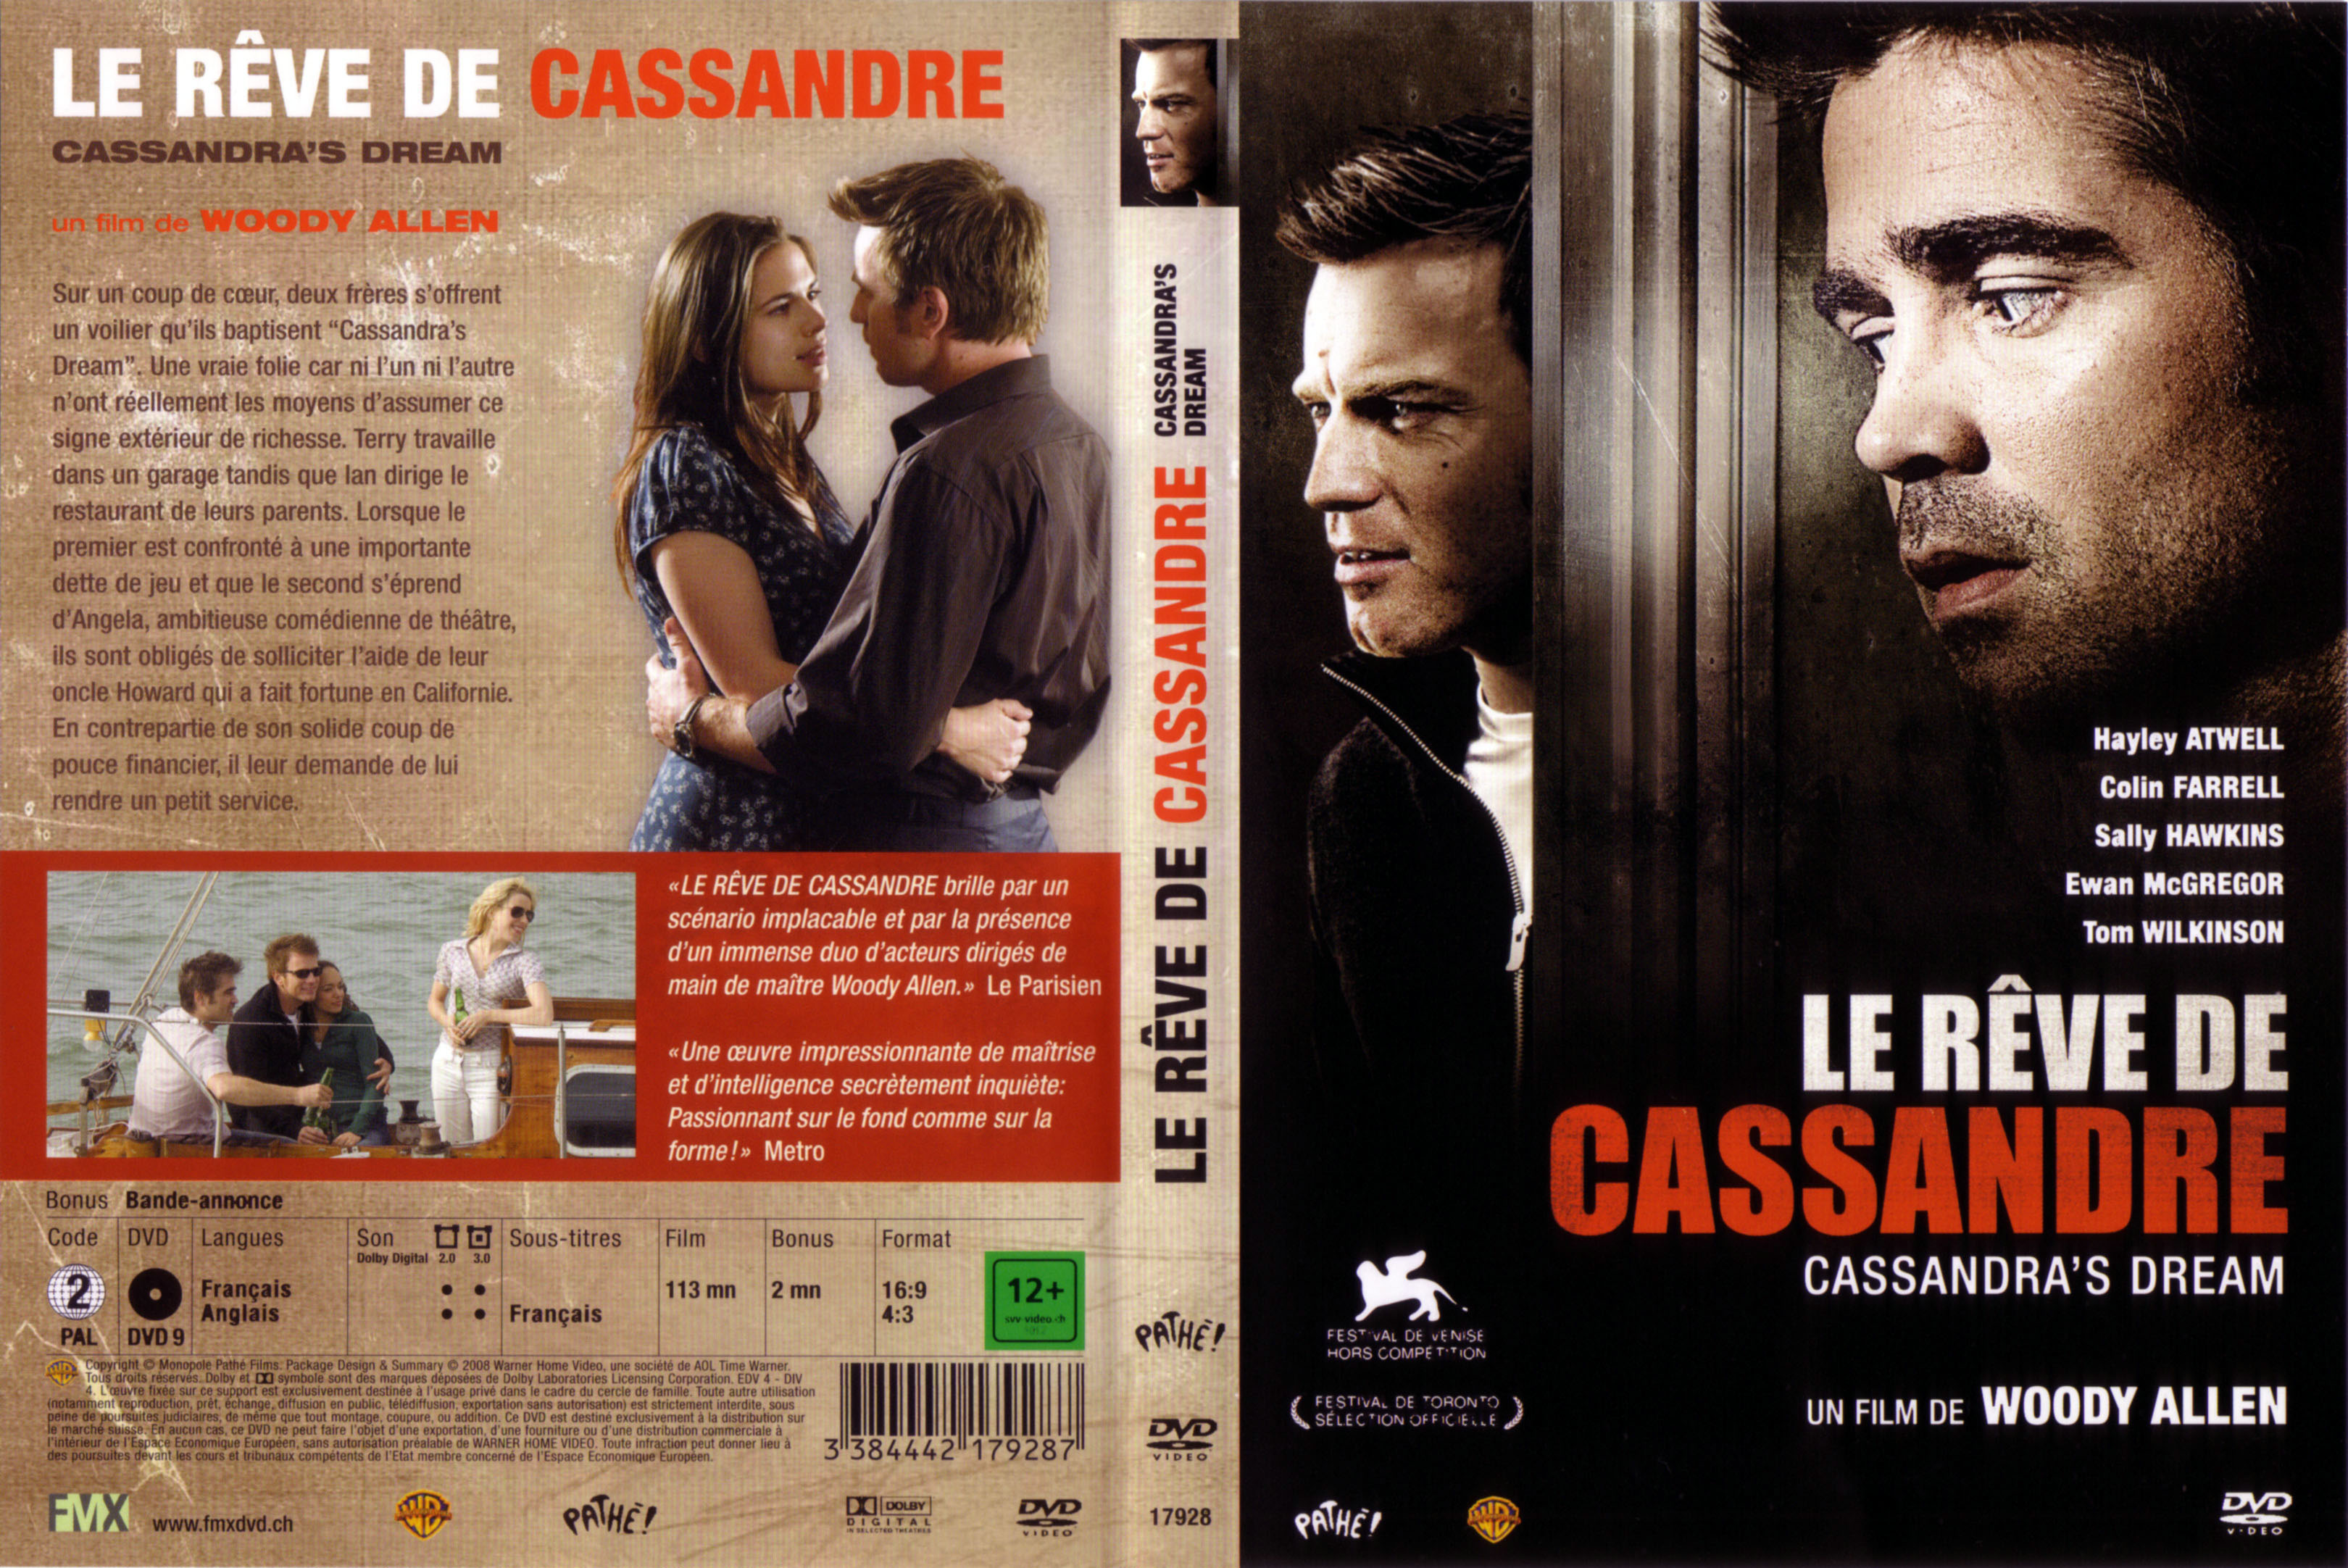 Jaquette DVD Le rve de cassandre v3